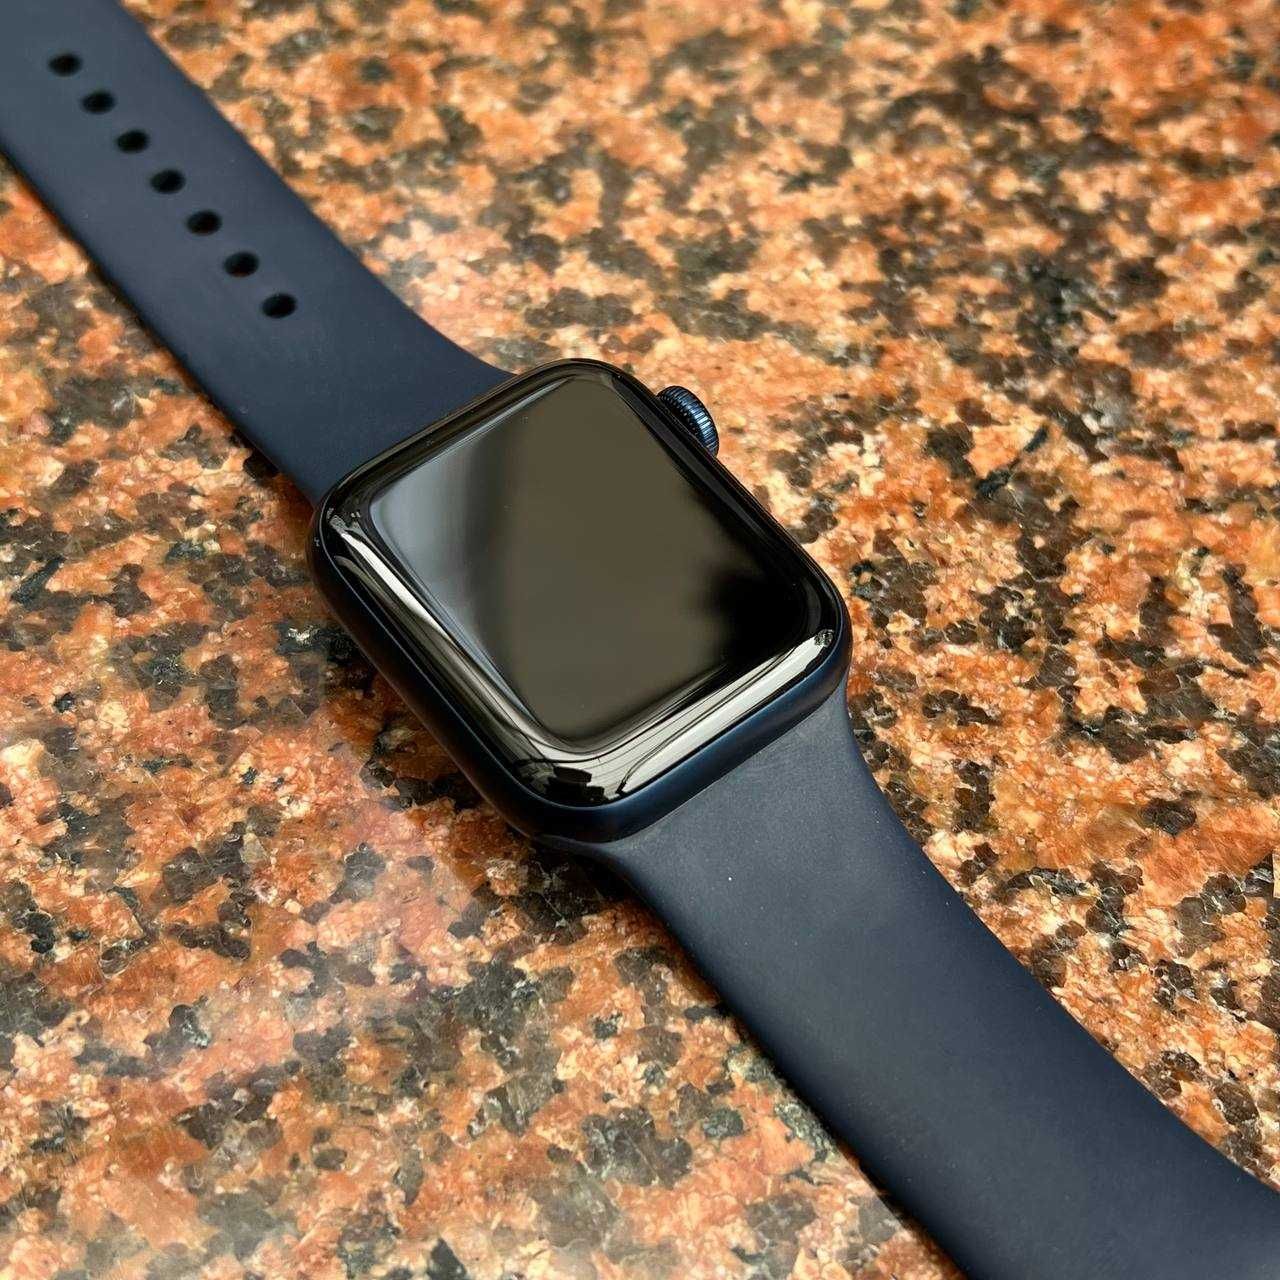 Смарт часы Apple Watch 6 40мм / Ломбард